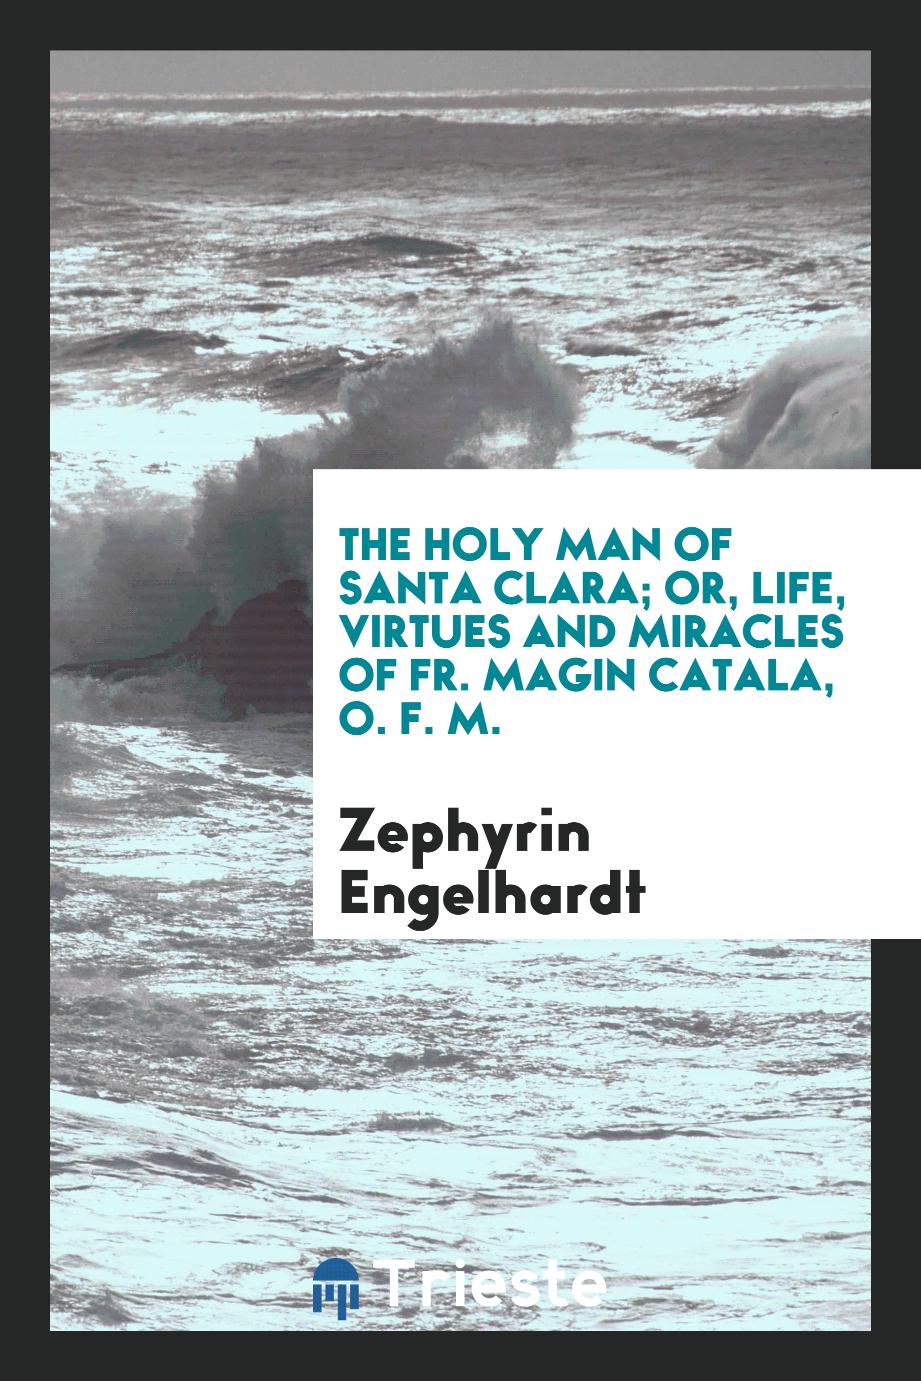 The holy man of Santa Clara; or, Life, virtues and miracles of Fr. Magin Catala, O. F. M.